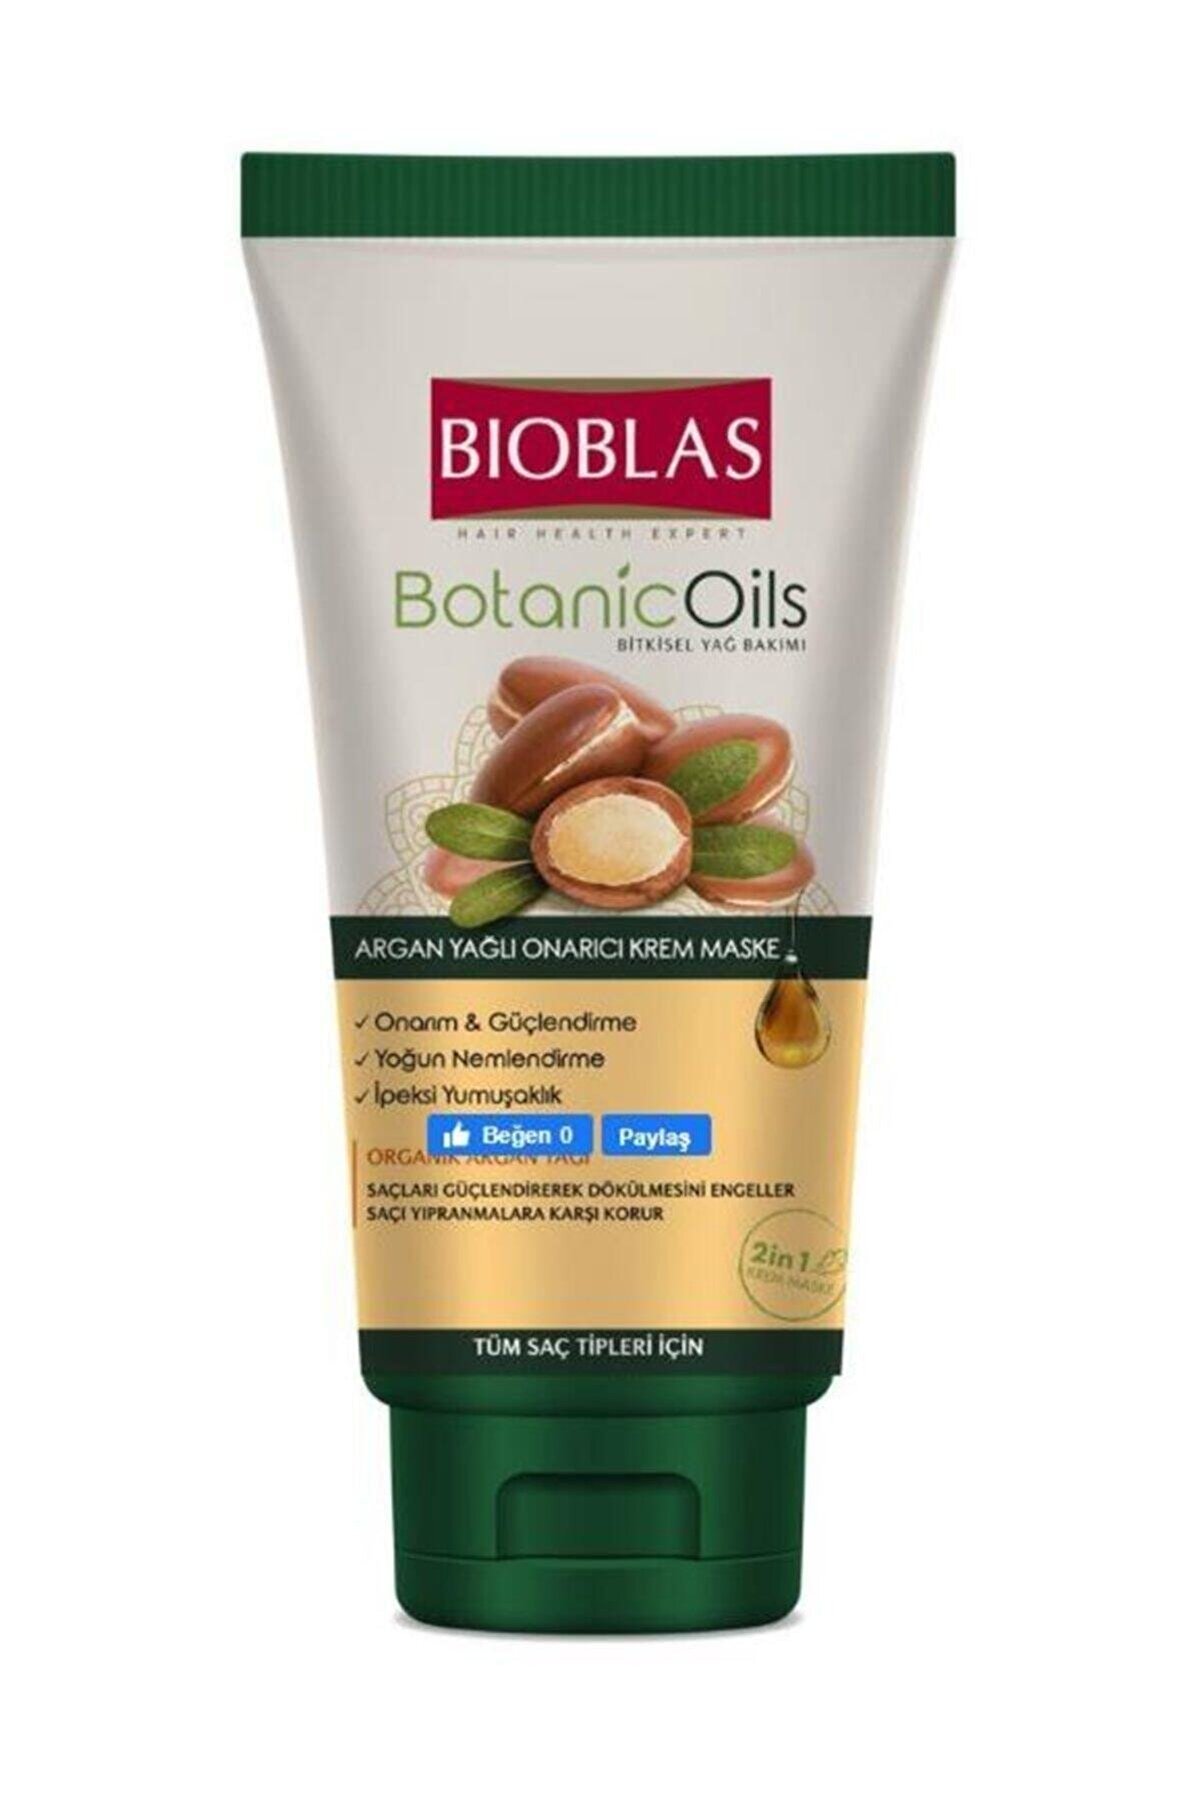 Bioblas Botanic Oils Saç Kremi Maske 200 Ml